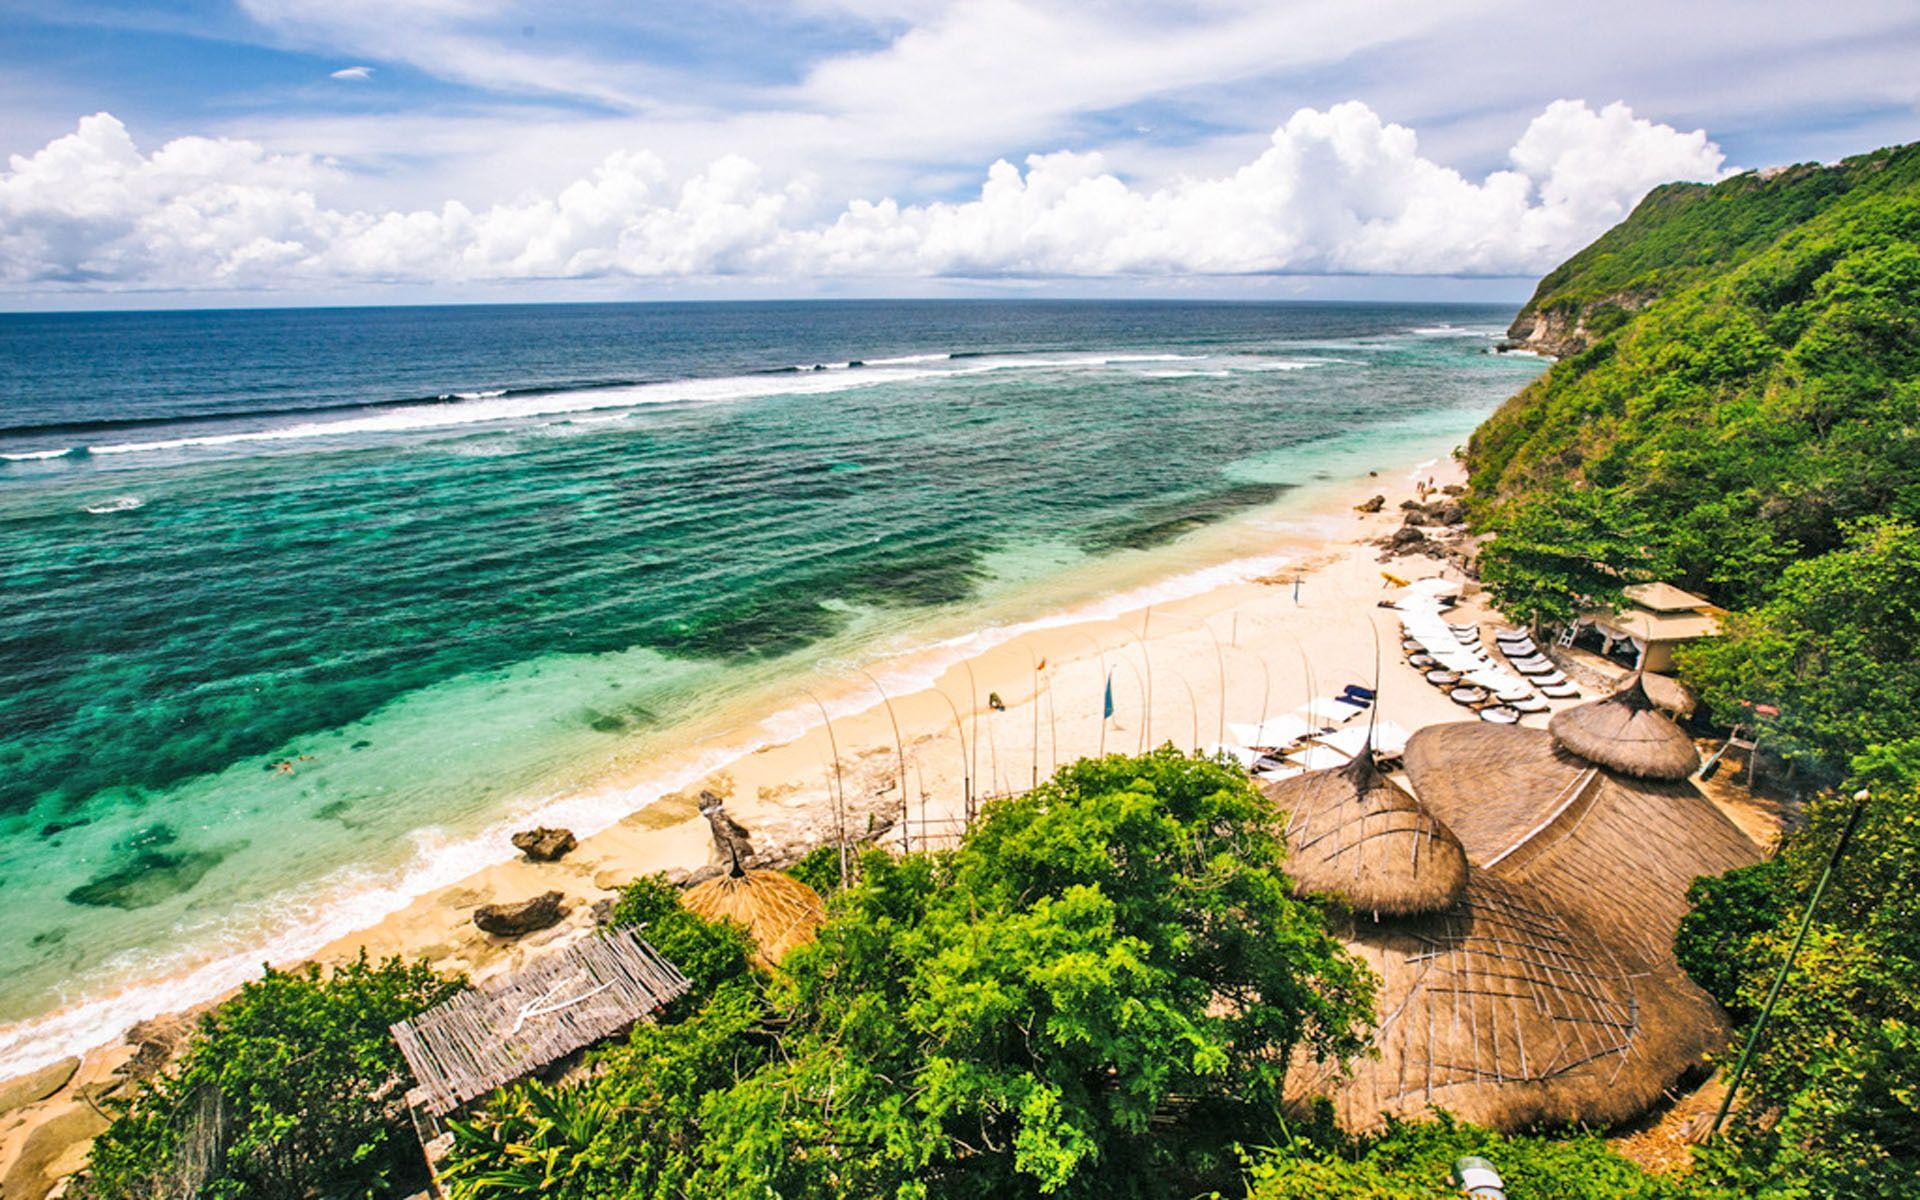 Bali Sunset Beaches Wallpaper